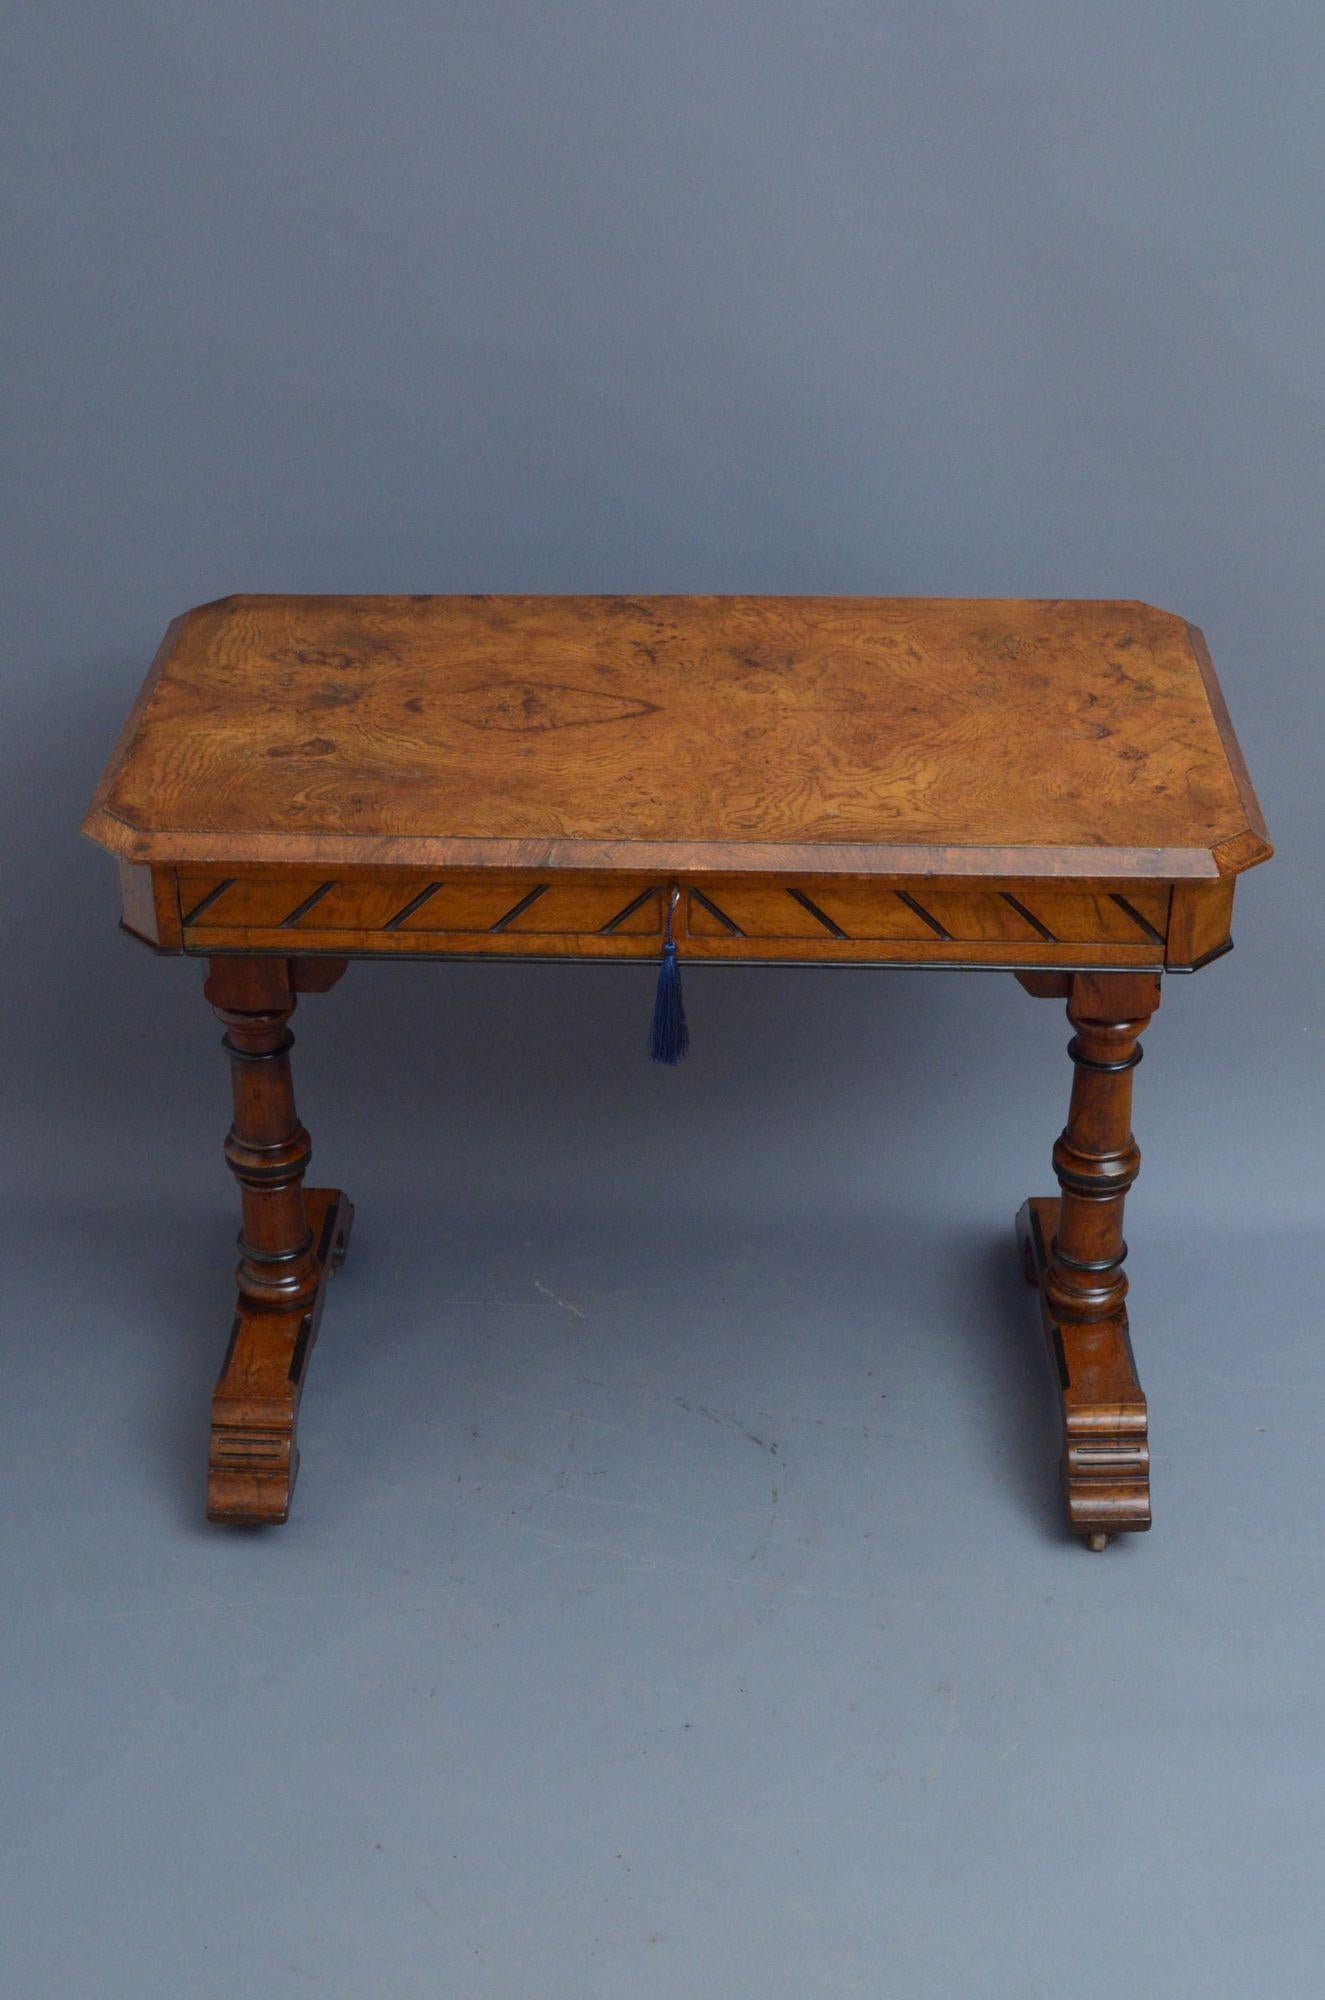 Sn5498 Stilvoller viktorianischer Eichenholztisch mit einer atemberaubenden Eichenholztischplatte mit abgeschrägten Ecken über einer geschnitzten Friesschublade, die mit einem funktionierenden Originalschloss und einem Schlüssel ausgestattet ist. Er